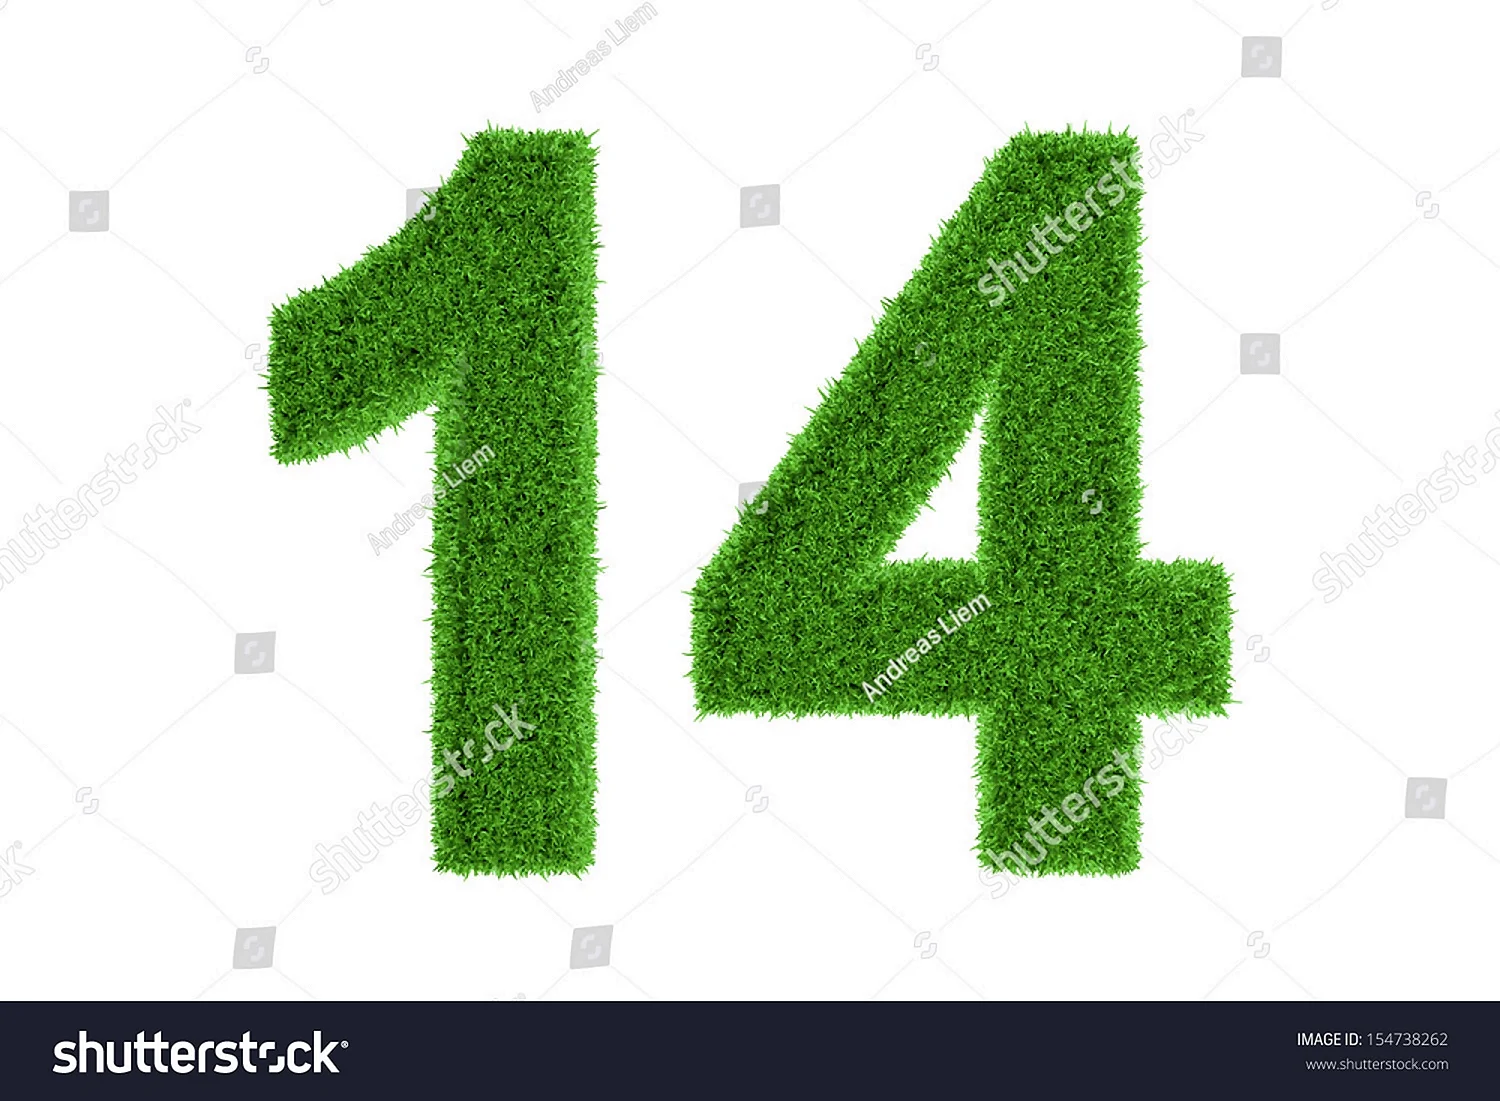 Цифра 14